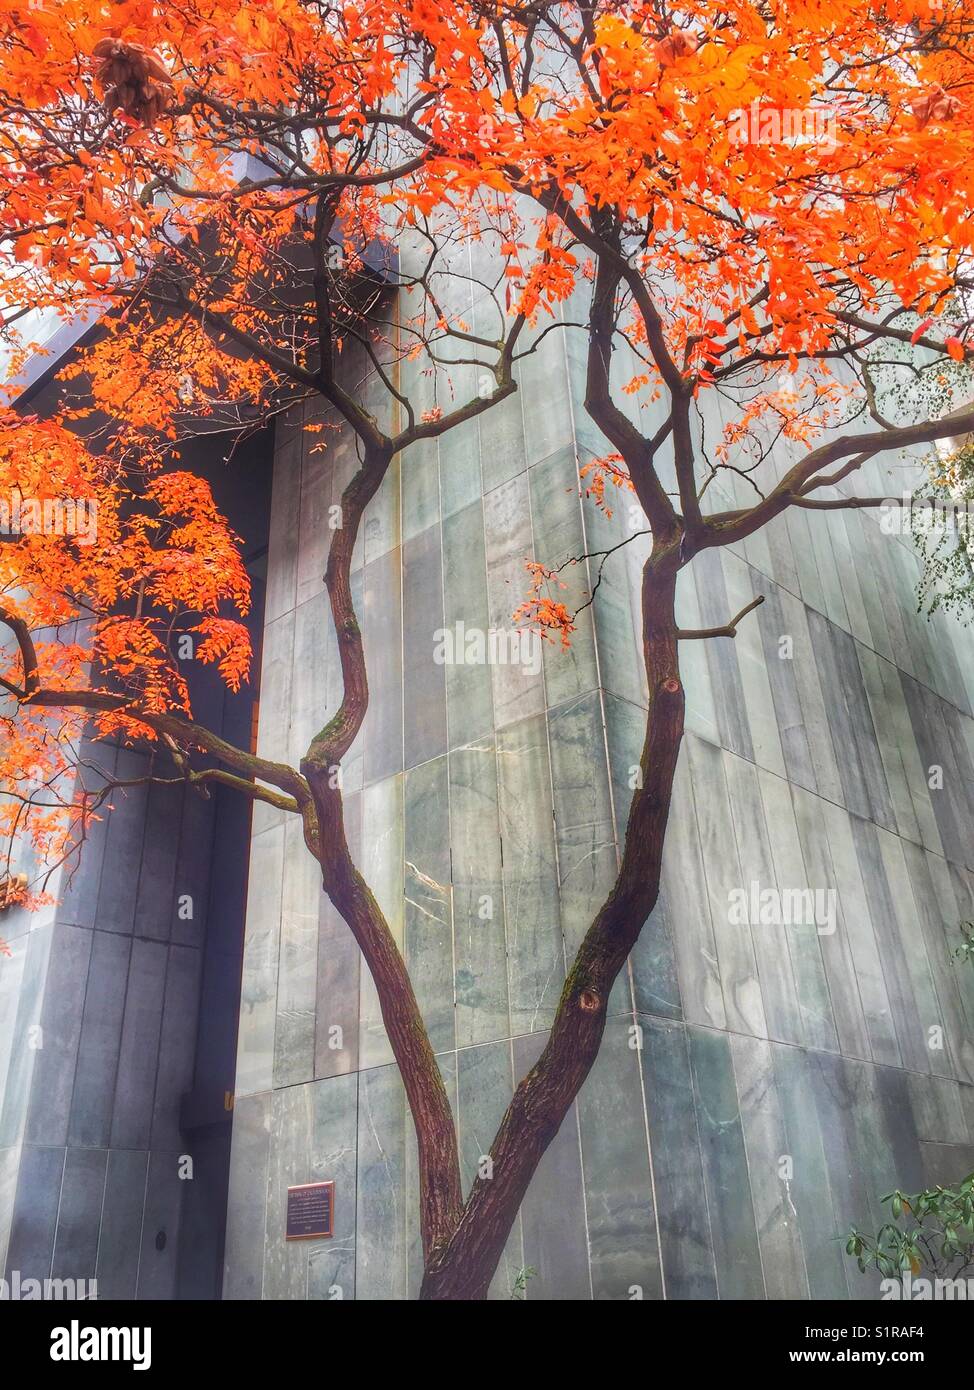 Colores de otoño en Portland, Oregon. Naranja brillante follaje de otoño complementa el matiz verdoso de pizarra de color gris claro en el año 1969 icono de Portland, Union Bank Tower (antiguamente Bank de California Building) Foto de stock